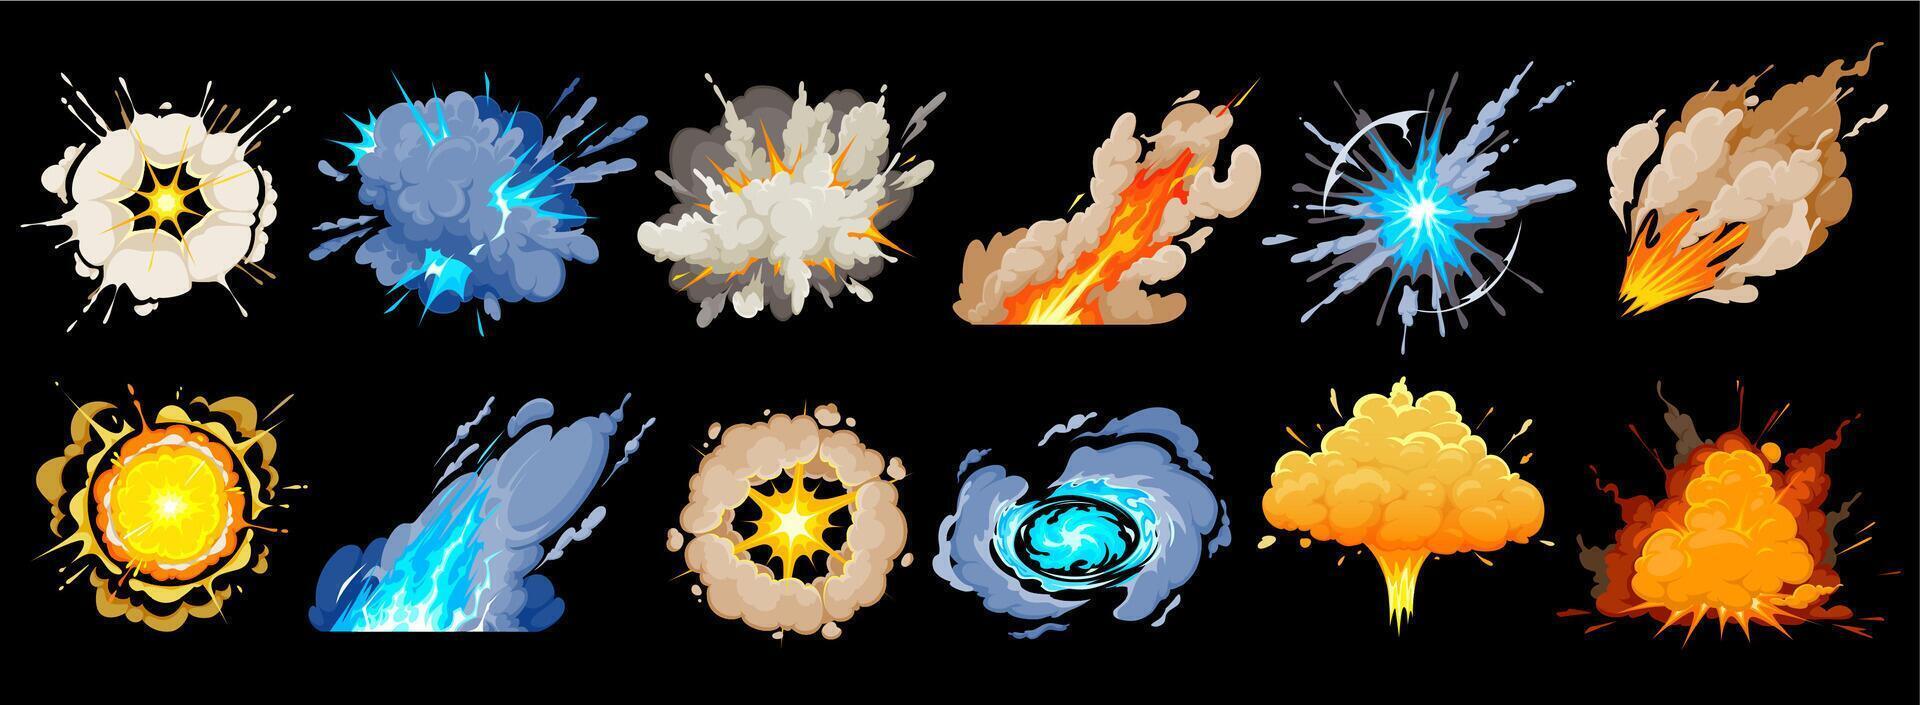 dibujos animados bomba explosiones, fumar y auge explosiones vector